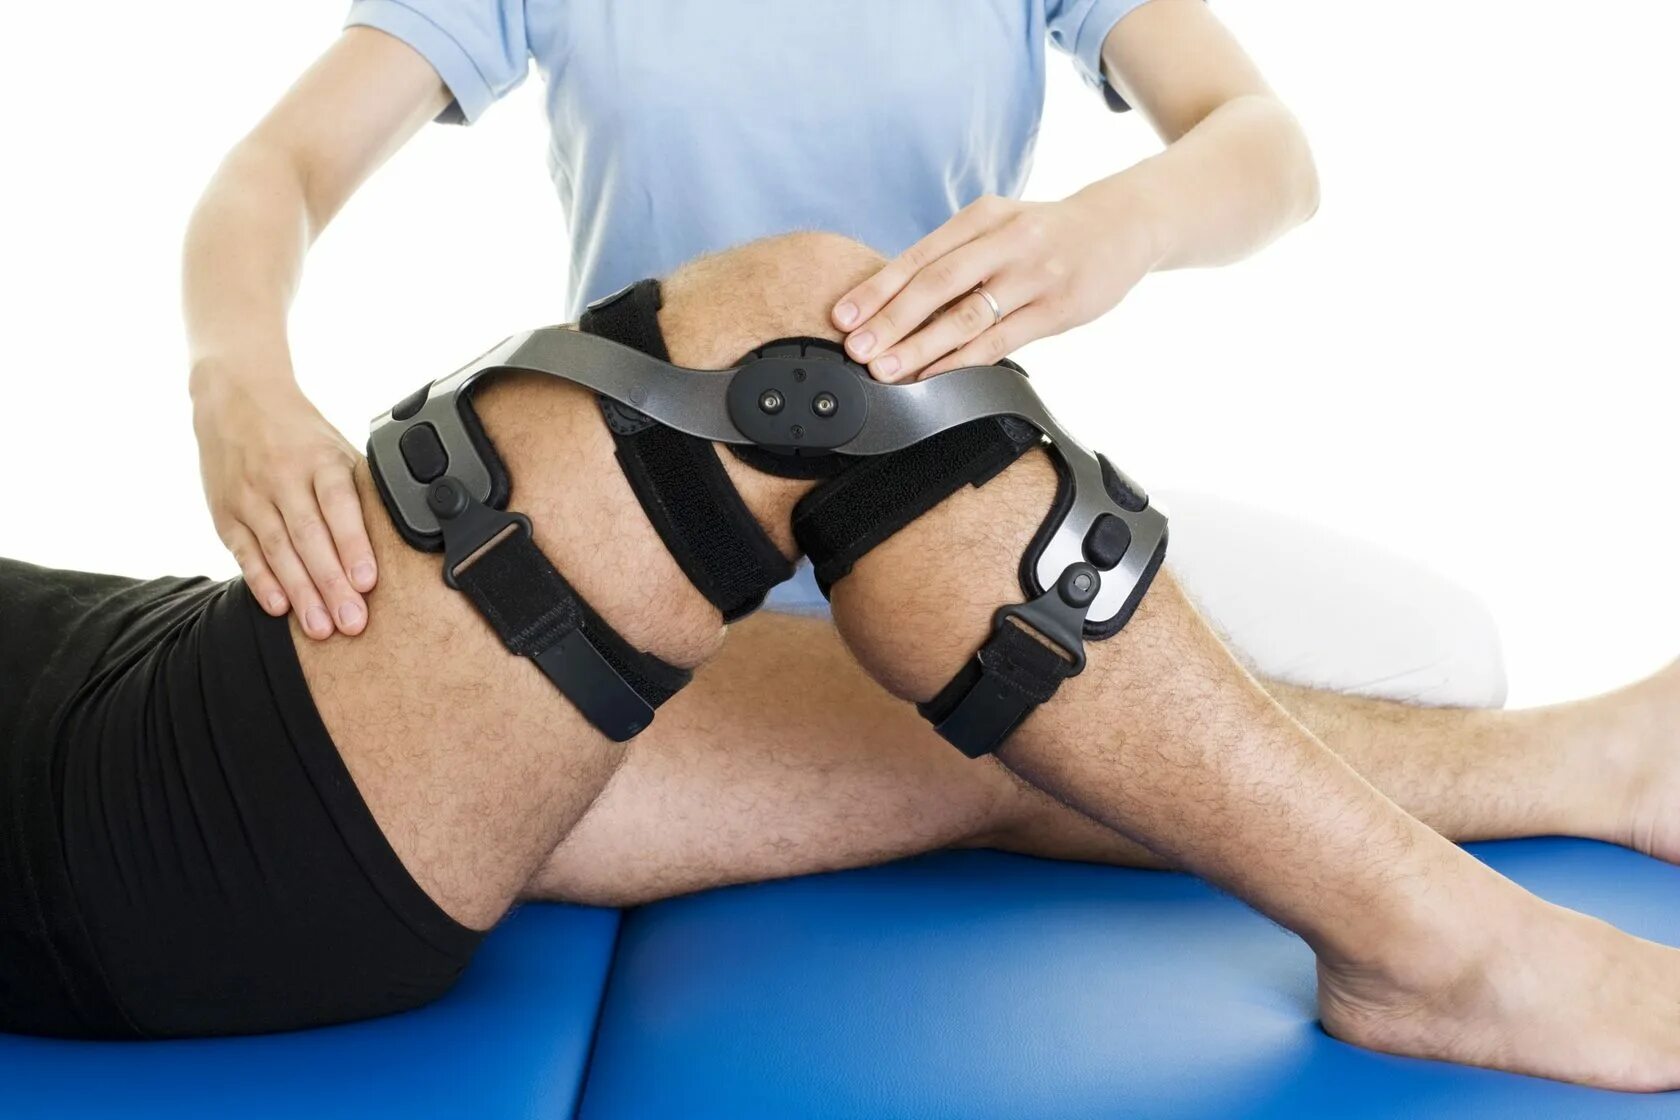 Реабилитация коленного сустава. Реабилитация после эндопротезирования коленного сустава. Реабилитацияпослеперайц иинаколенномсуставе. Ортез на тазобедренный сустав. Операция эндопротезирование коленного сустава реабилитация